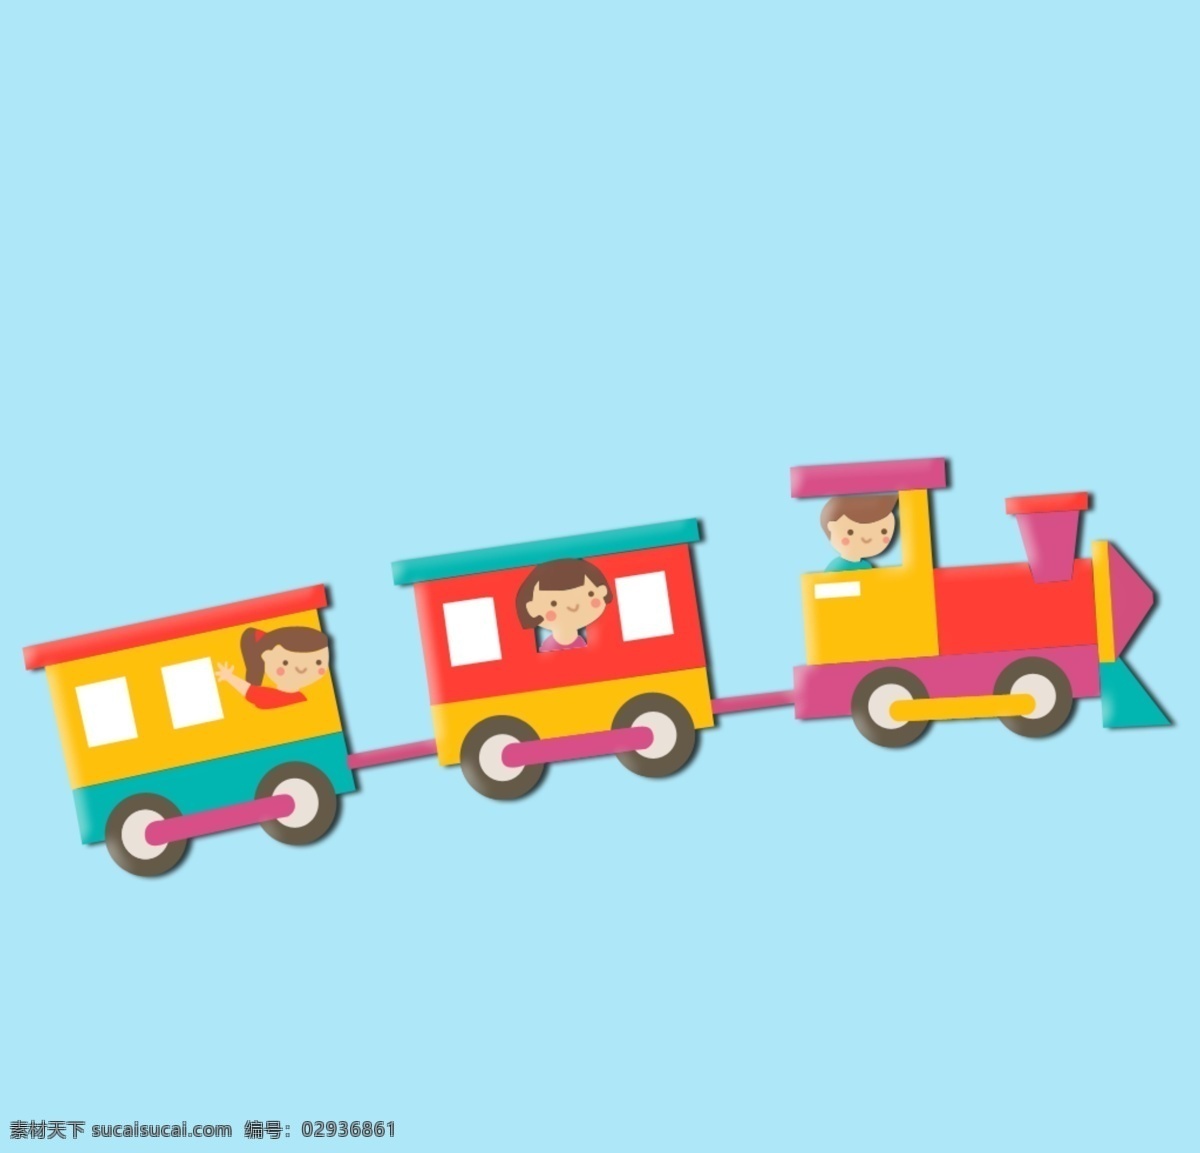 小火车图片 卡通小火车图 小火车 手绘小火车 卡通人物 动漫动画